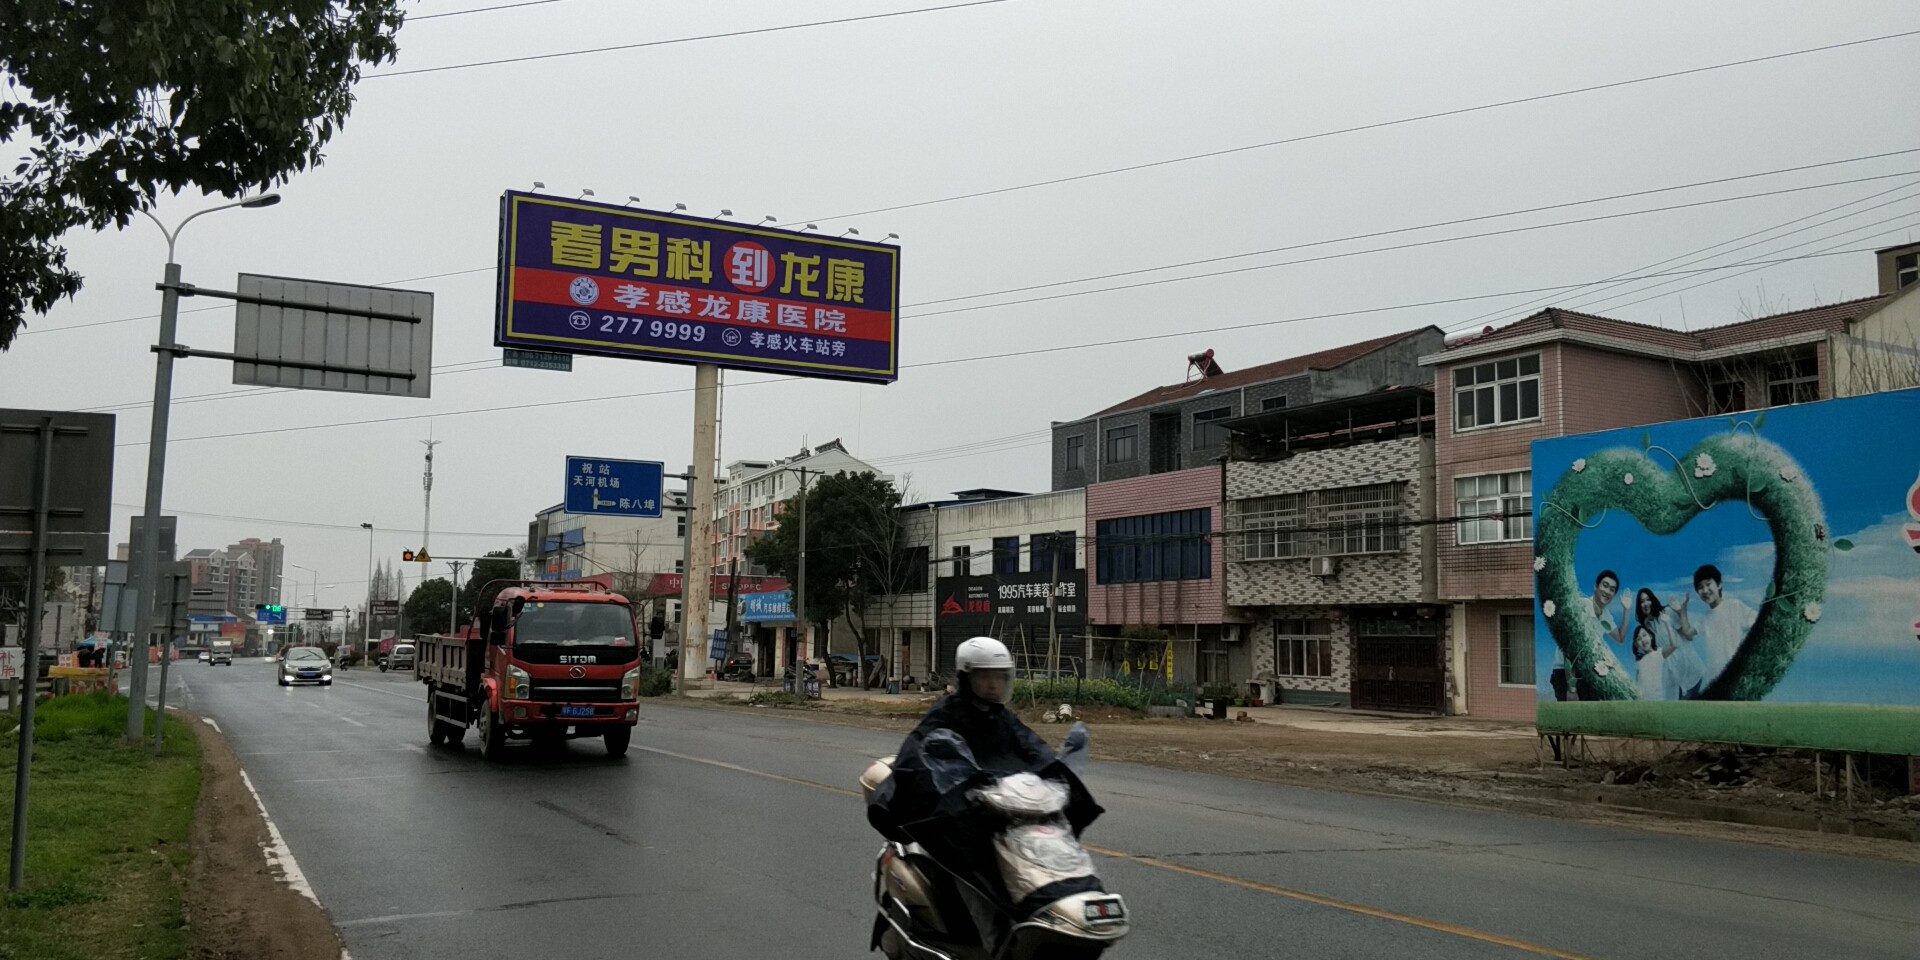 京珠高速處龍康醫院廣告牌